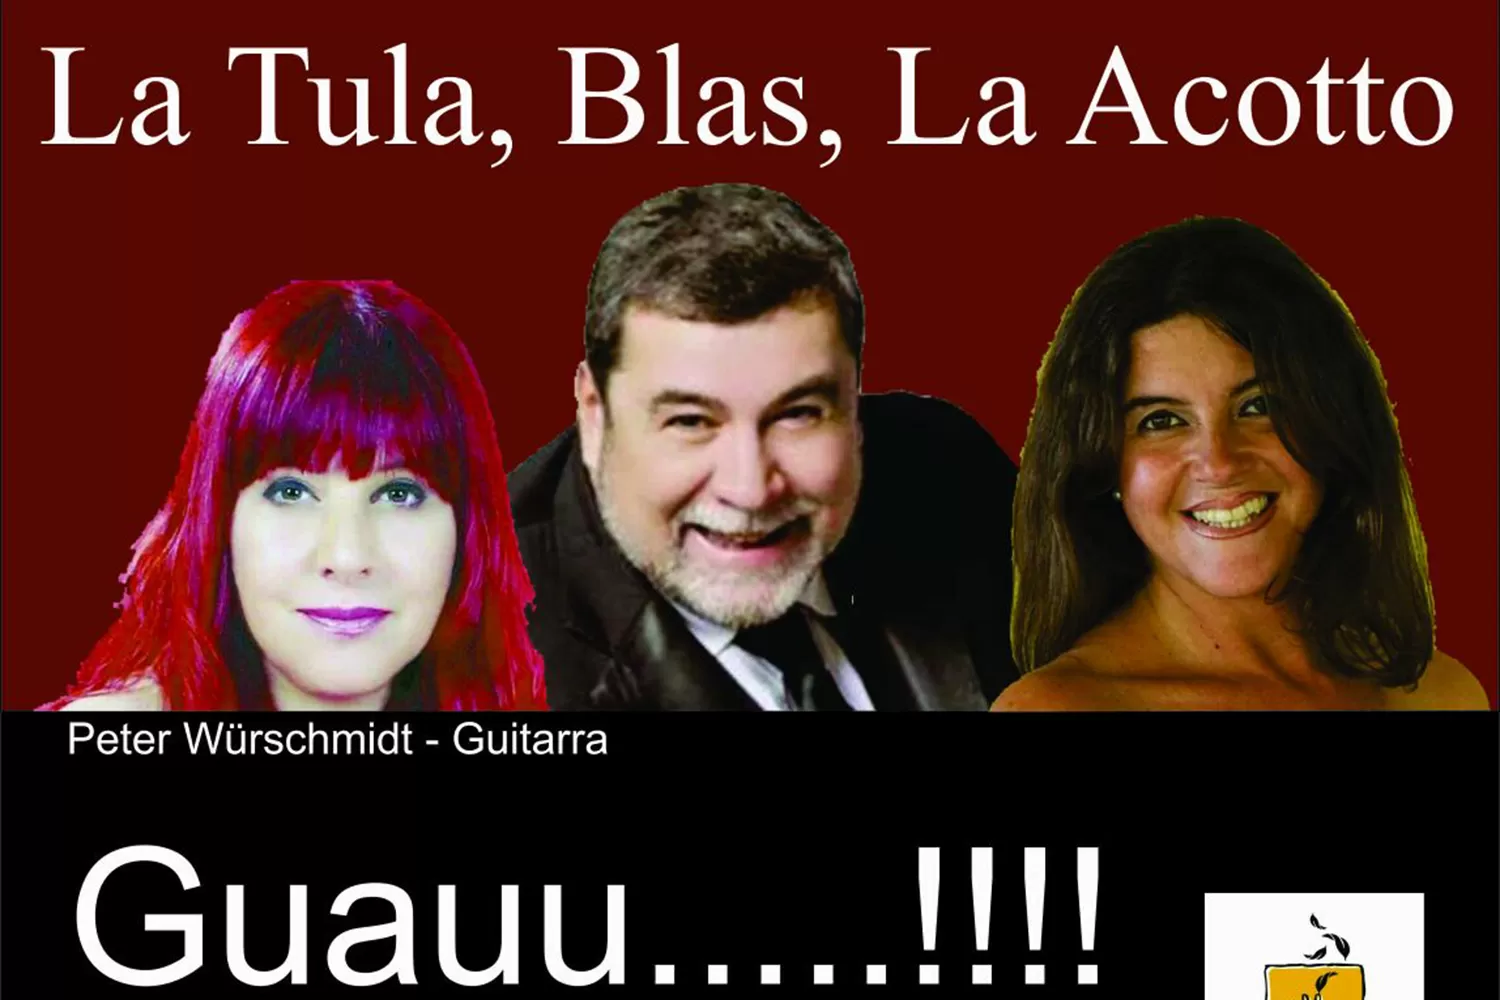 Blas García, Mariela Acotto y Adriana Tula se presentarán este viernes